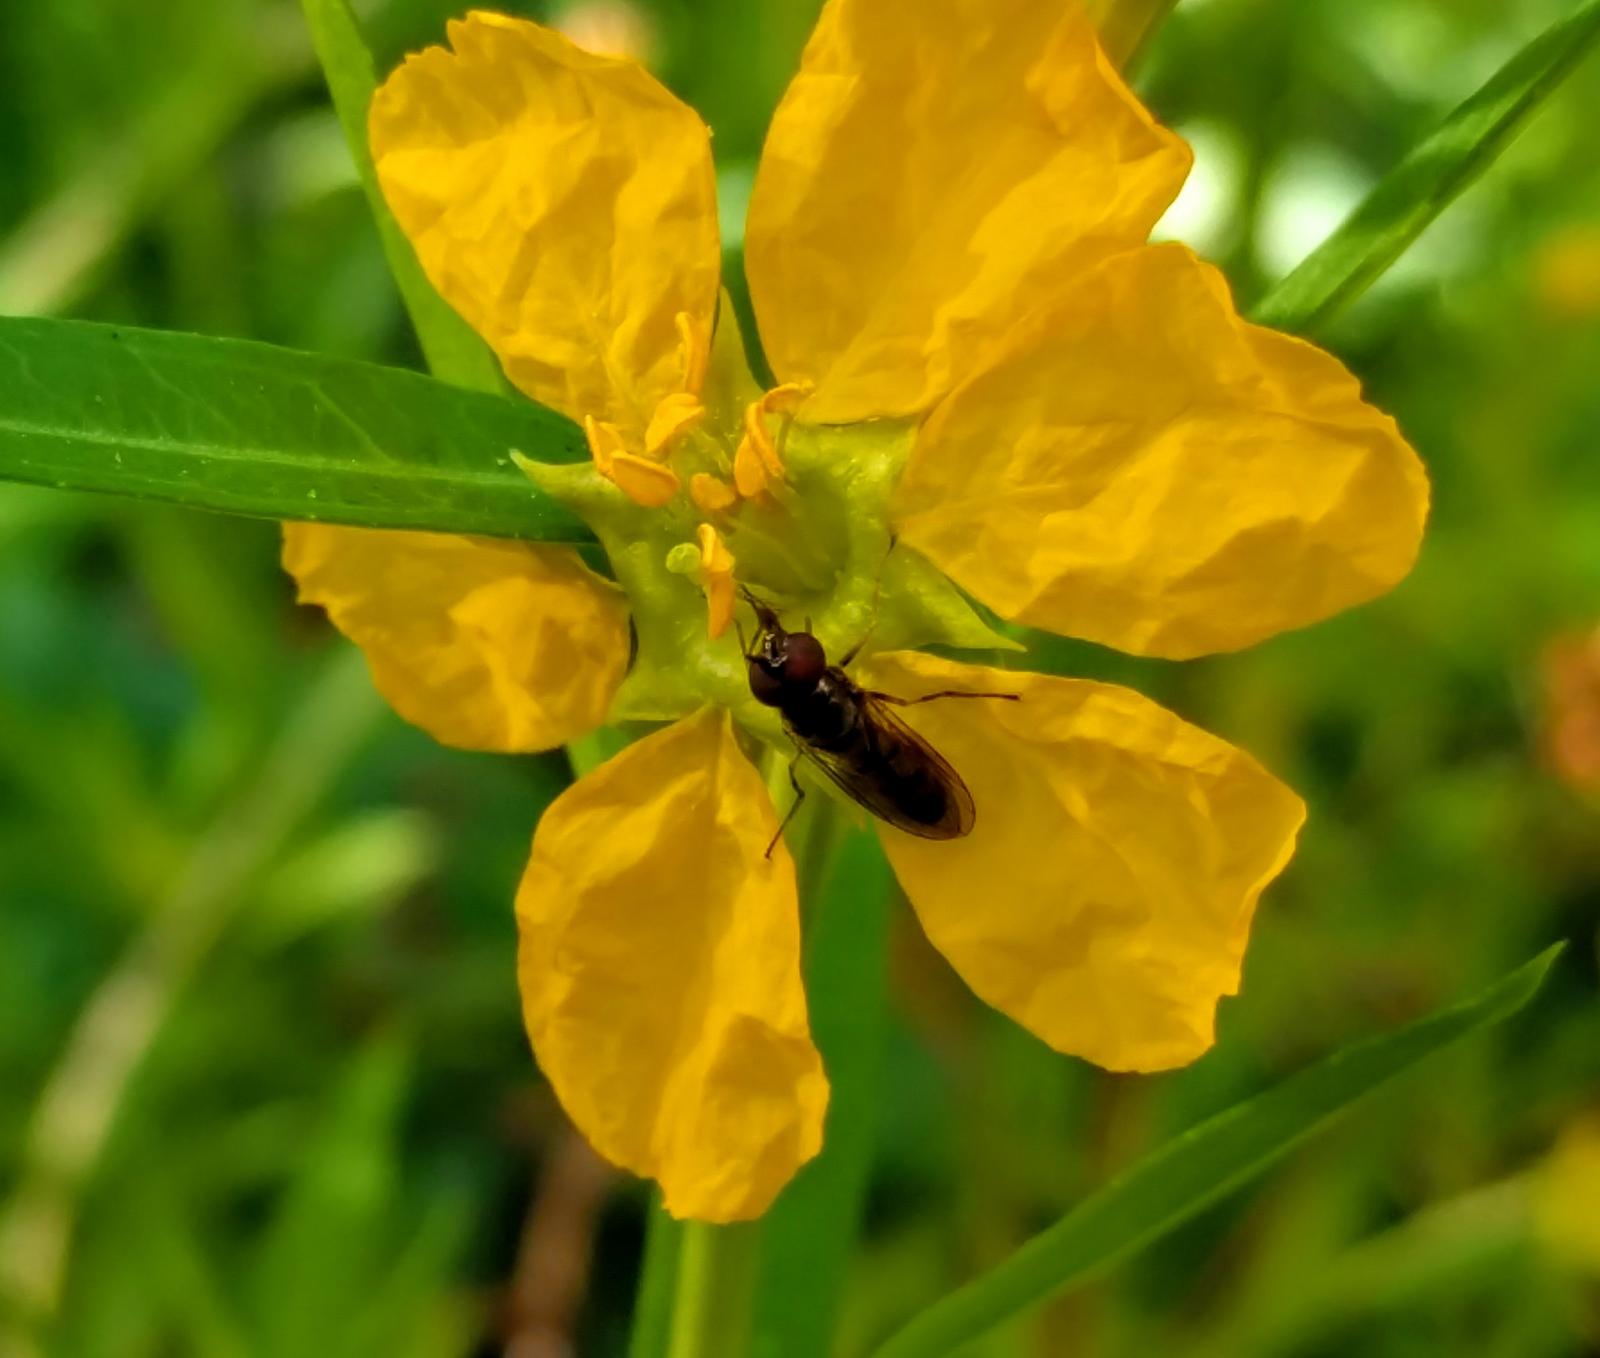 Sinicuichi pollination